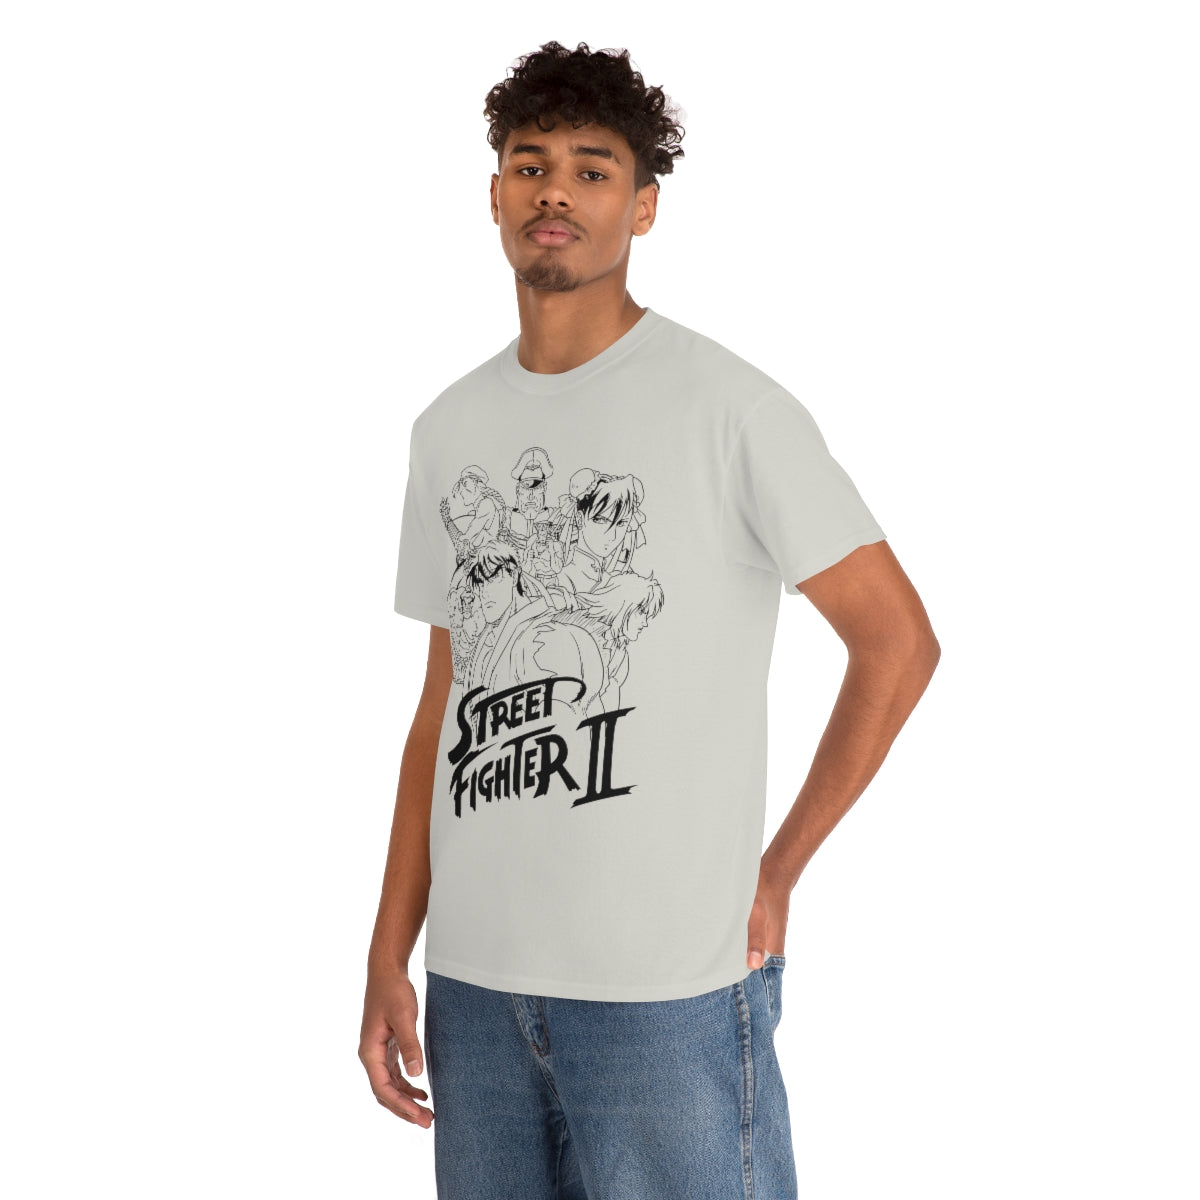 Street Fighter II T-Shirt